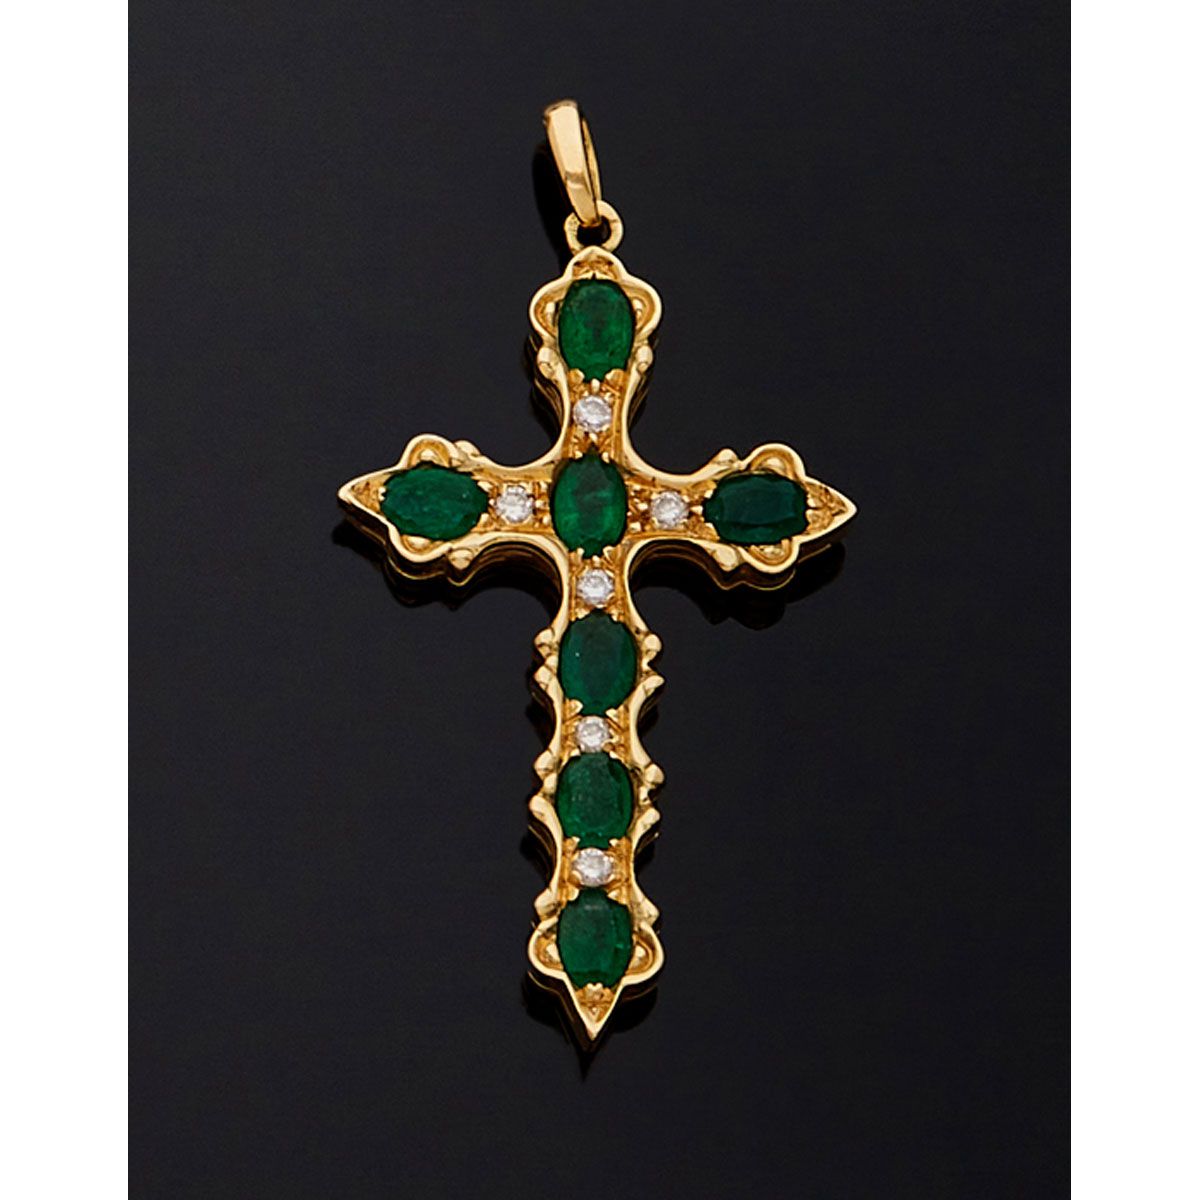 Null 14K黄金585毫米十字架，镶嵌7颗绿宝石和明亮式切割钻石。

B.P. 10,6g。